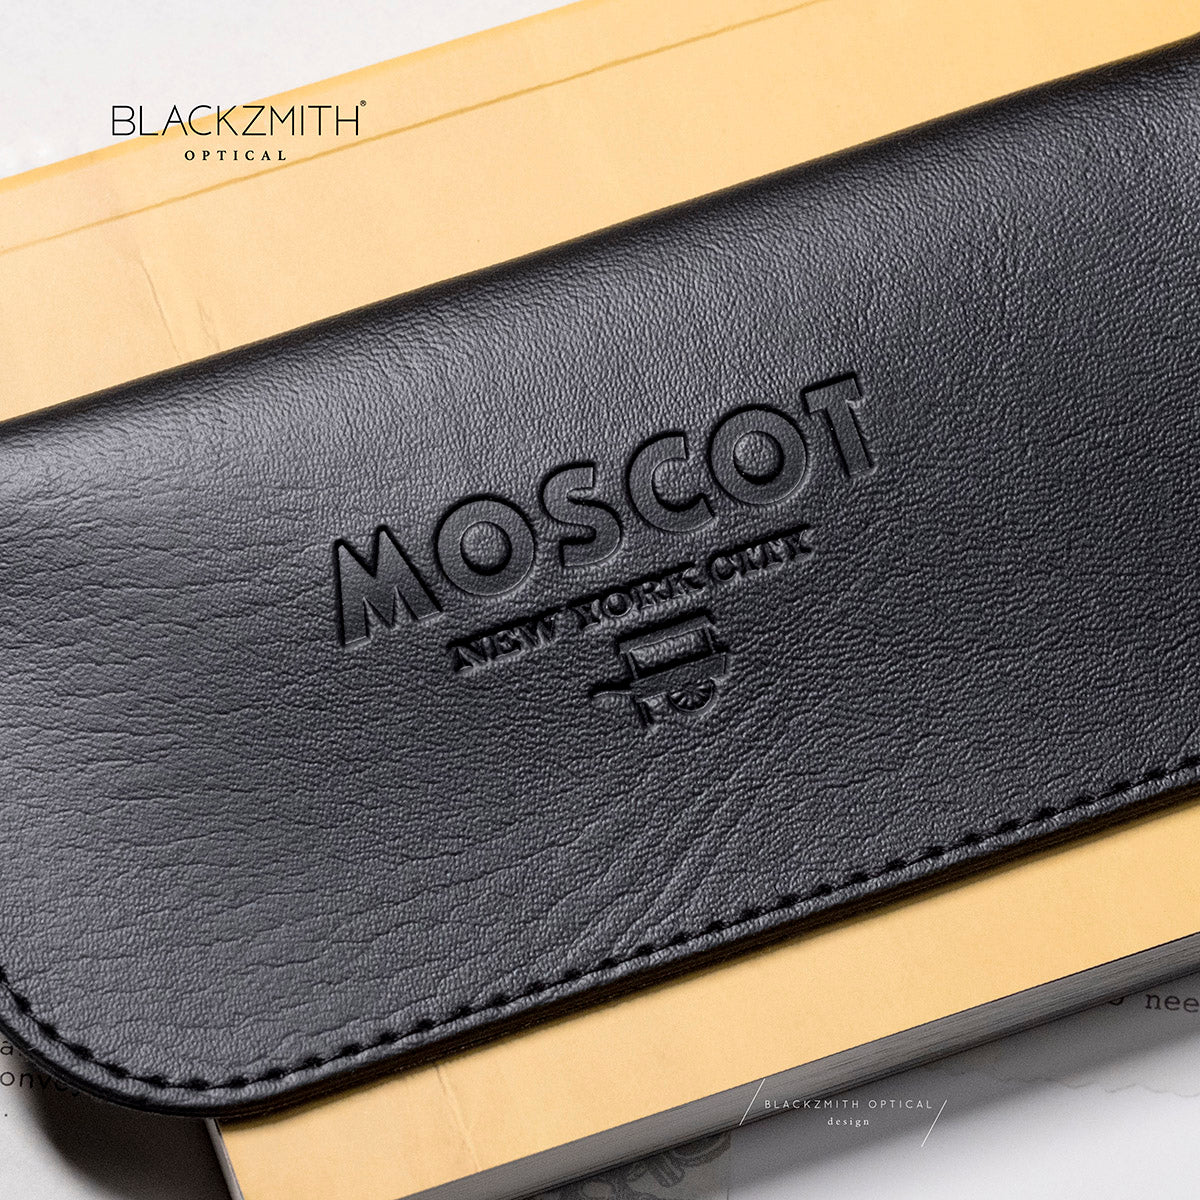 Moscot - Lemtosh ClipTosh Gold -Bel Air Blue (CLIP ON只適用於 Lemtosh size 46/49)